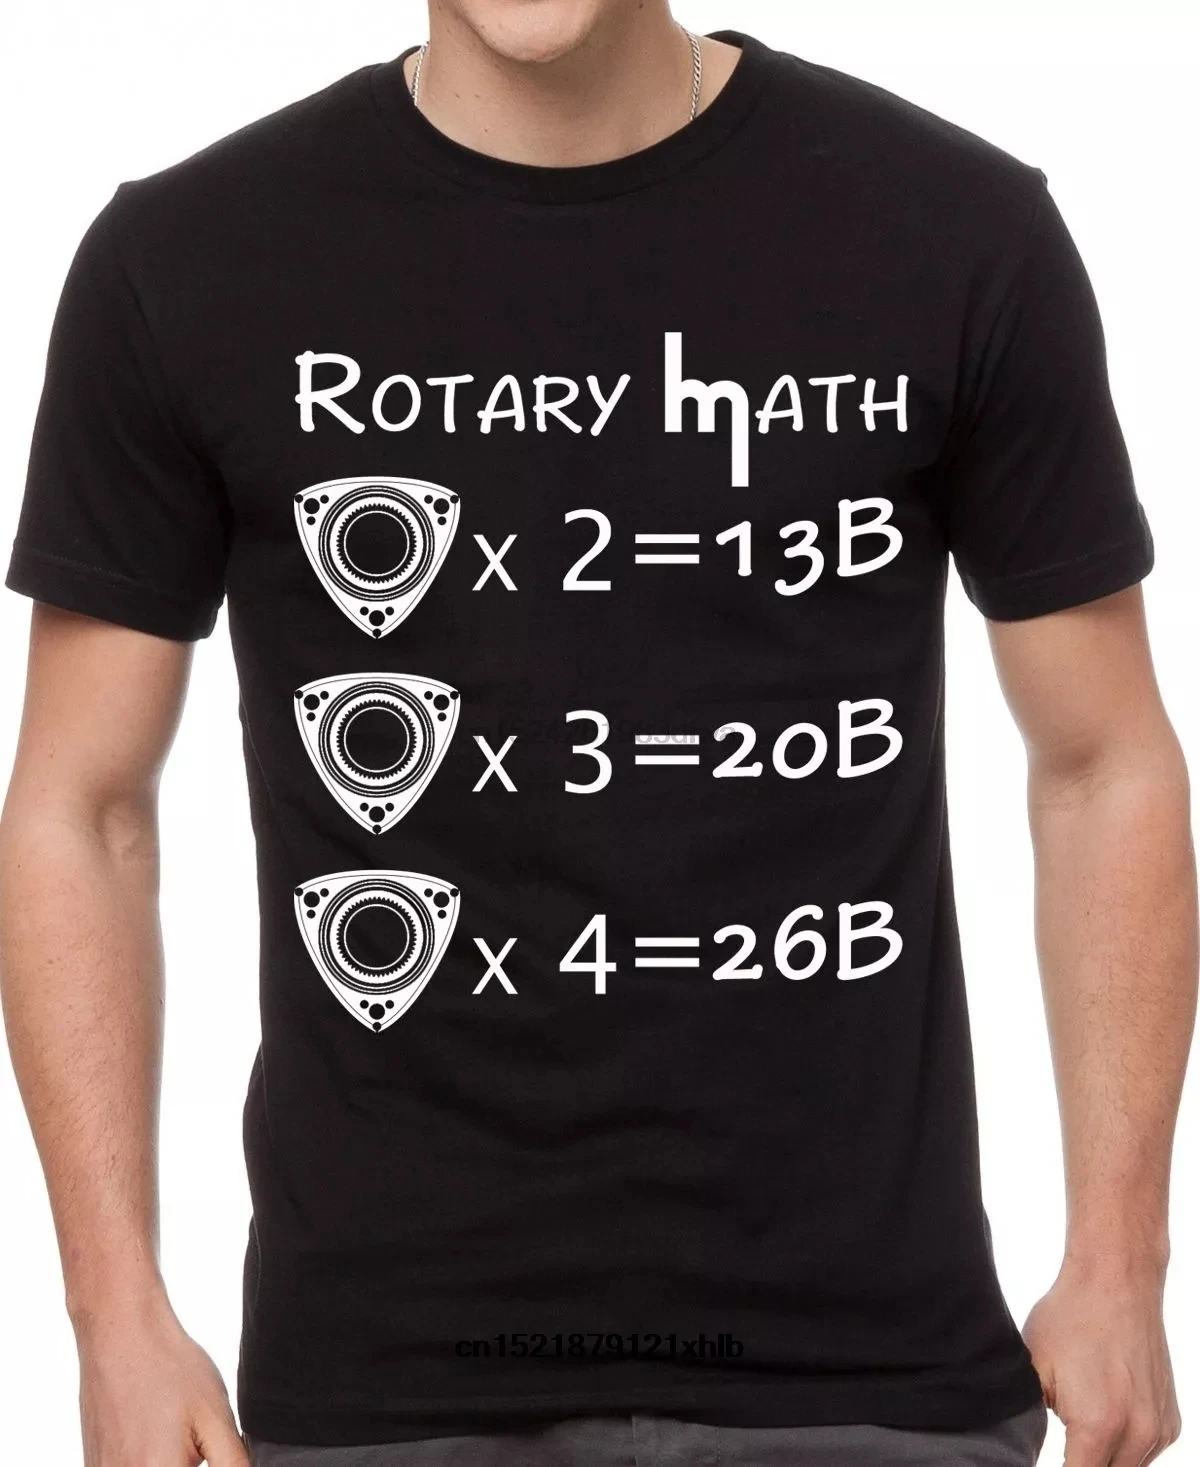 

Мужская футболка ротационная Математика Mazda Rx7 Wankel Engine 13B Rx7 Rx8 забавная футболка Новинка